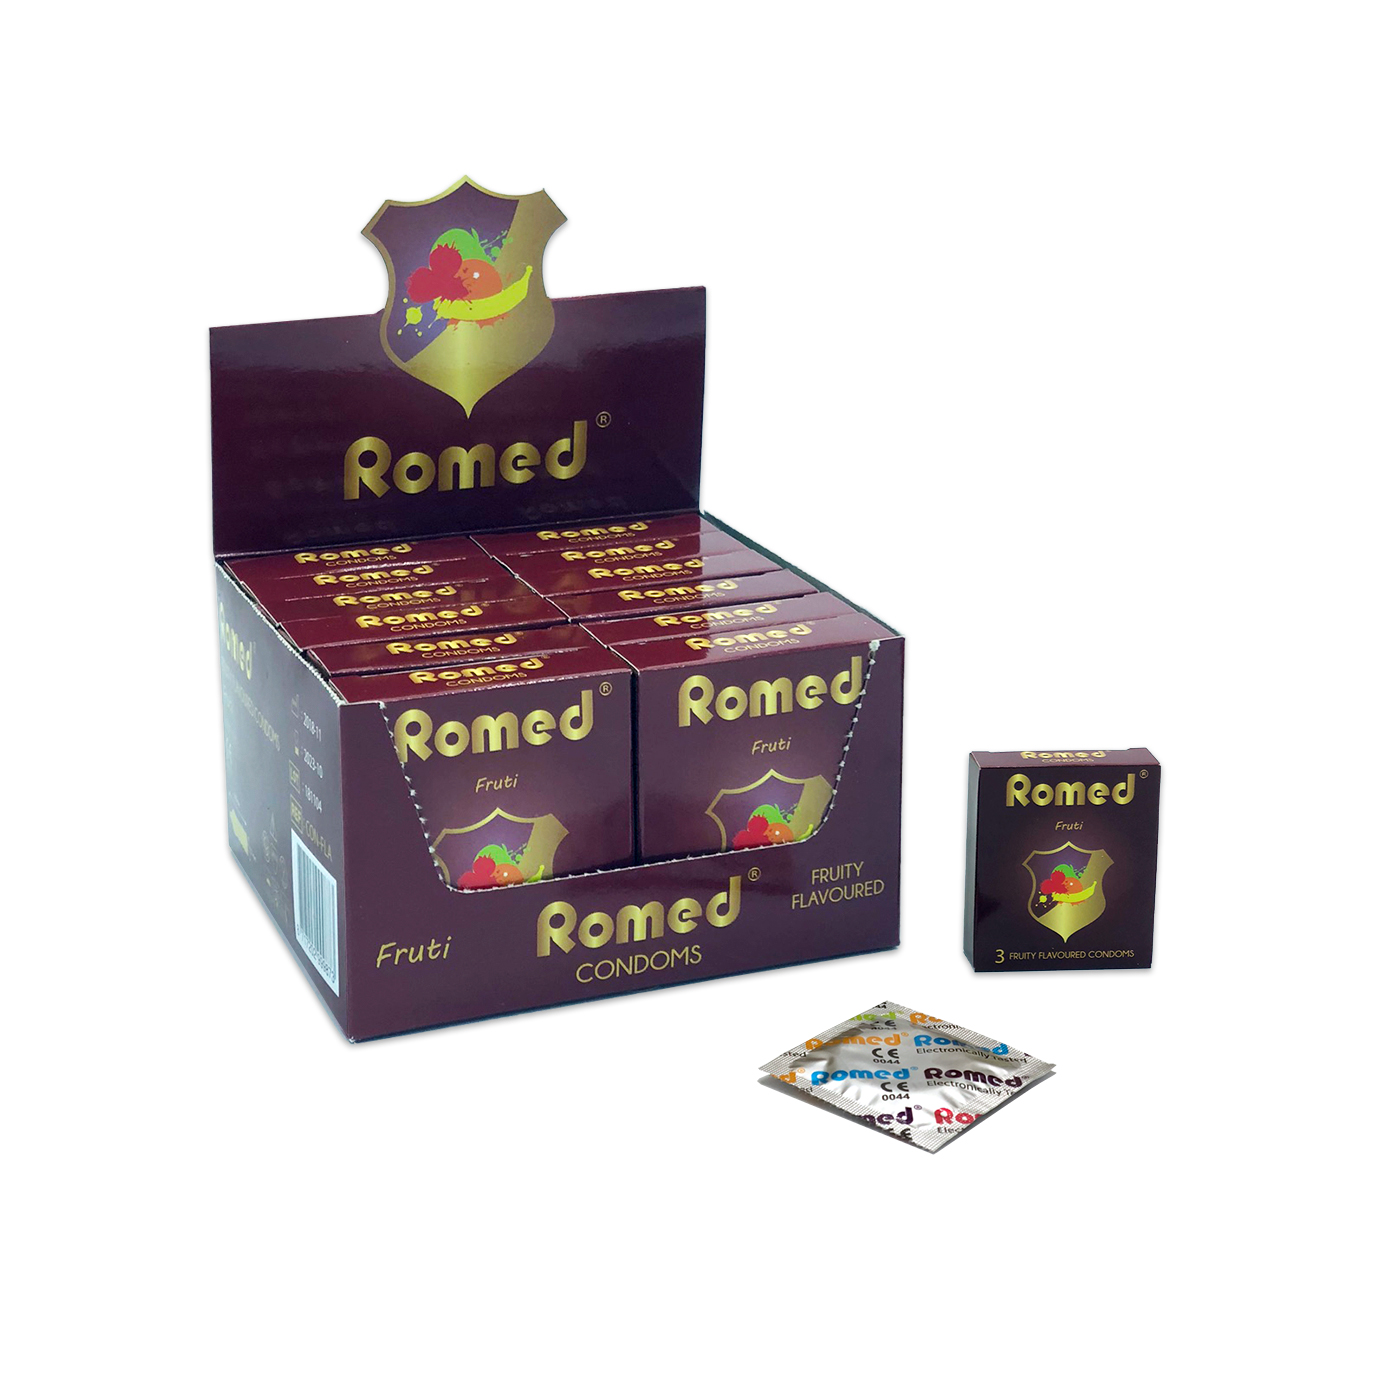 CON-FLA Romed condooms met smaak, verpakt per 3 stuks in een envelopje, in cellofaan, 48 envelopjes van 3 stuks = 144 stuks (= 1 gros) in binnendoosje, 30 x 144 stuks = 4.320 stuks in een karton.